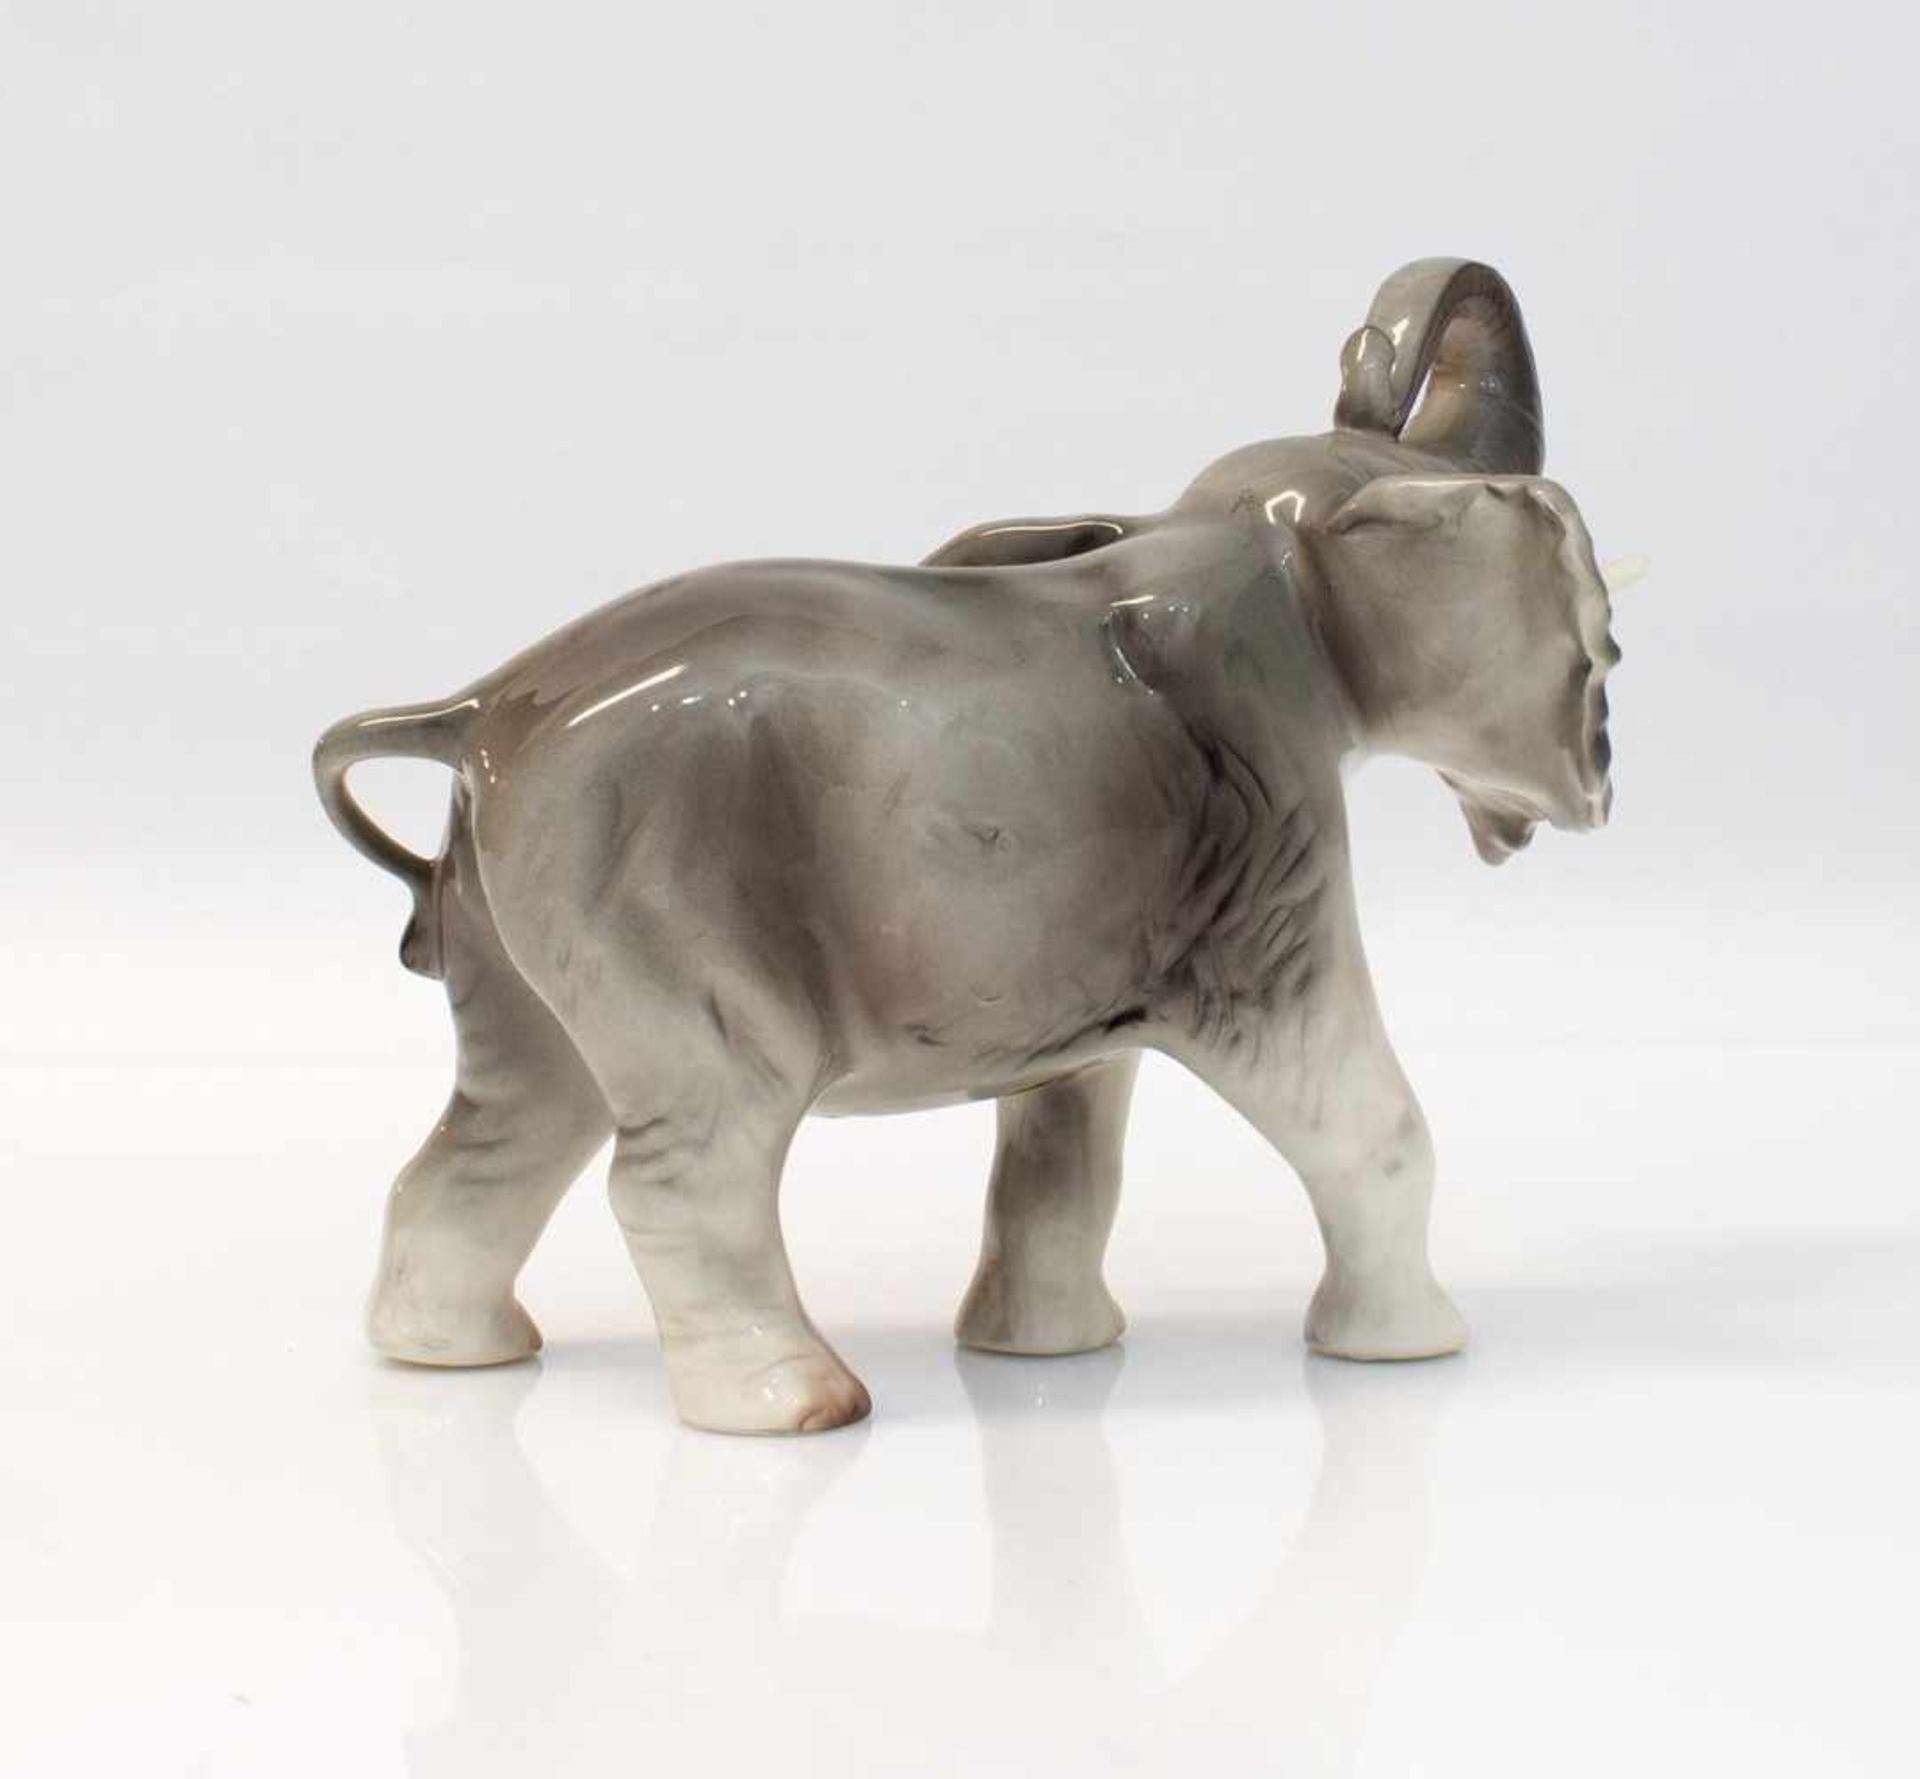 Elefantenbulle unbekannte Porzellanmanufaktur, H. 17 cm - Bild 2 aus 2